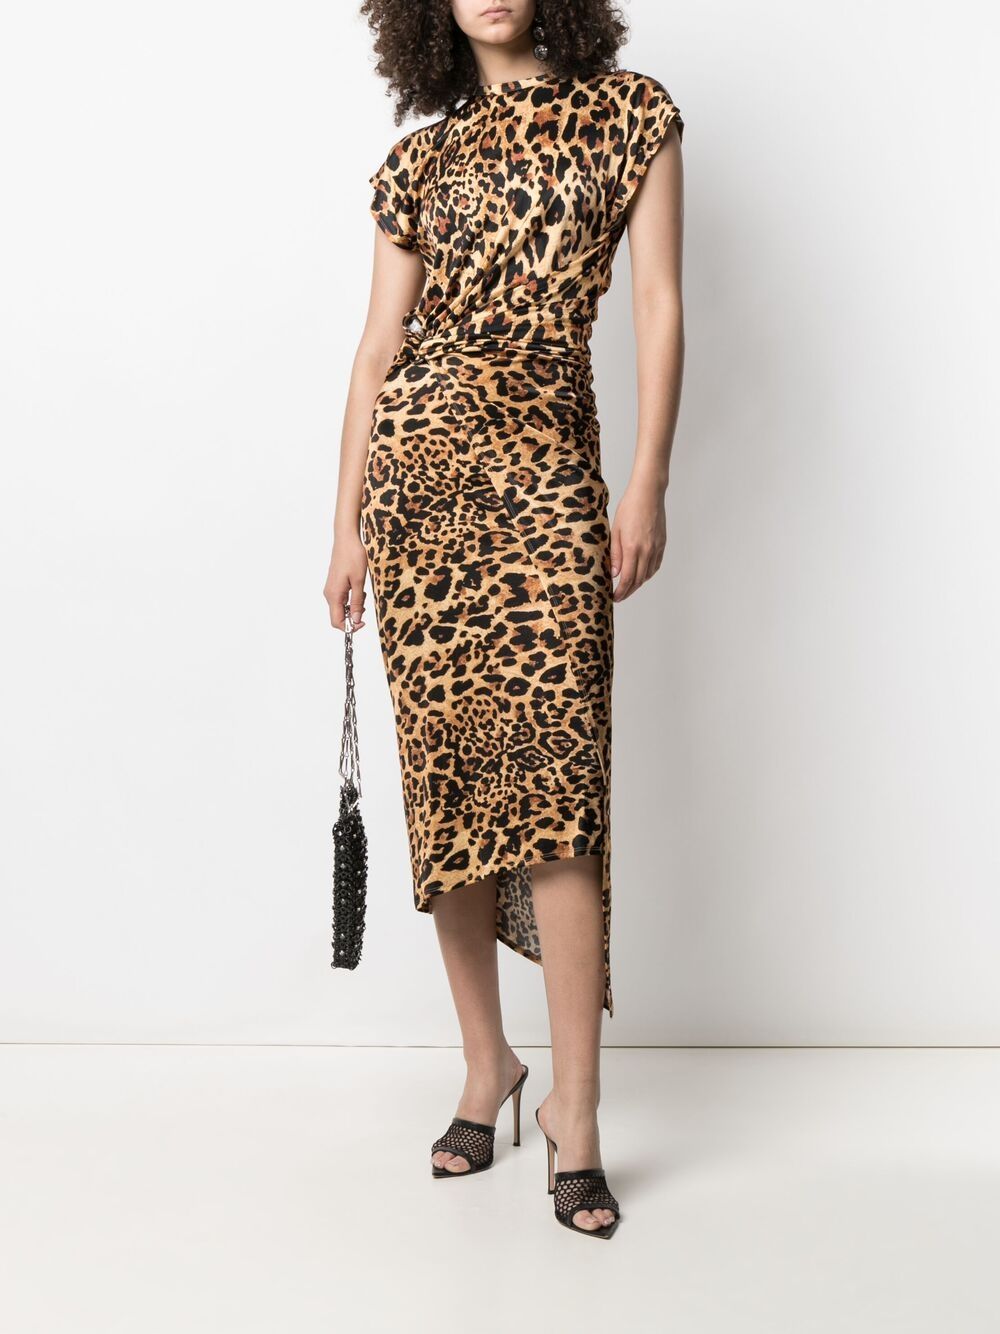 фото Paco rabanne приталенное платье с леопардовым принтом